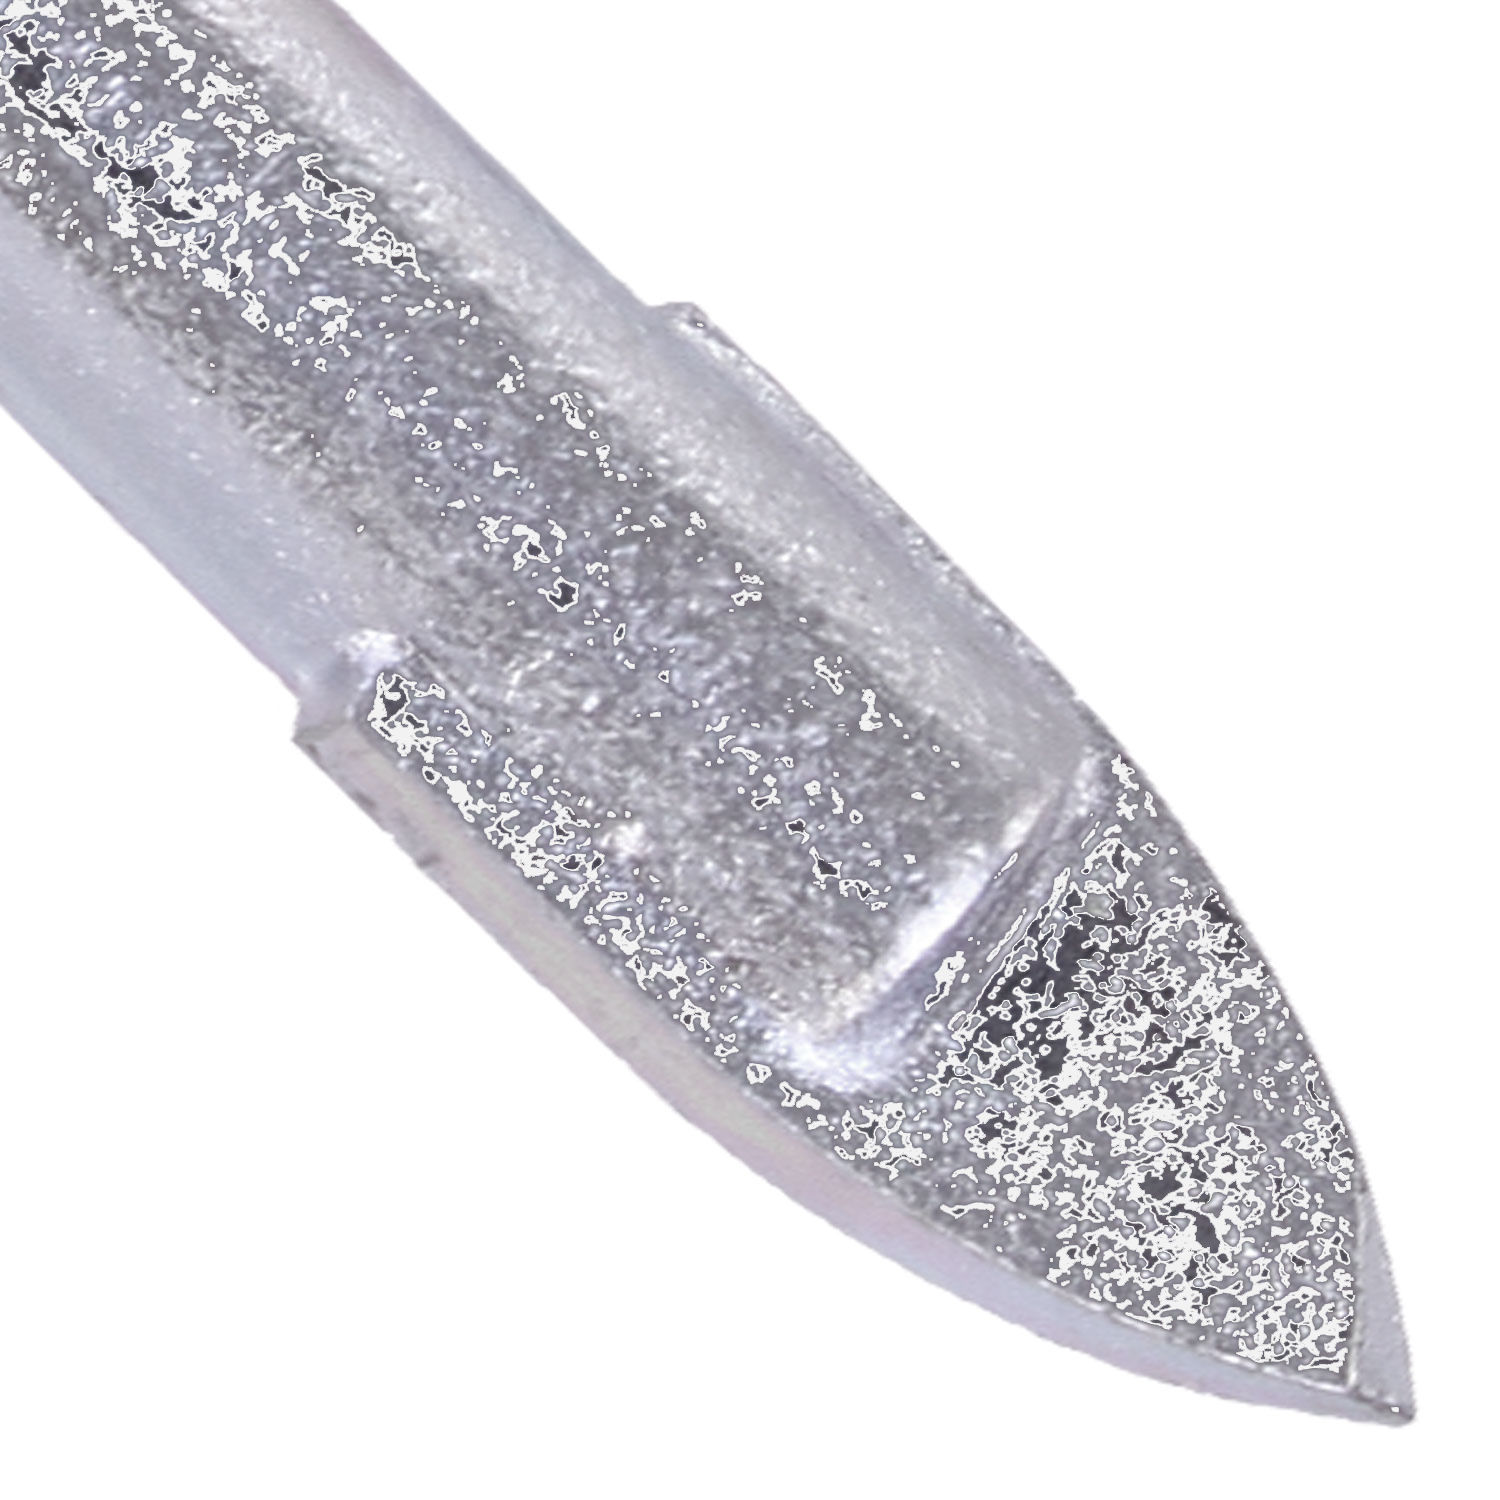 1 KEIL Glasbohrer Ø = 4mm, Länge = 58mm - diamantgeschliffene Hartmetallplatte